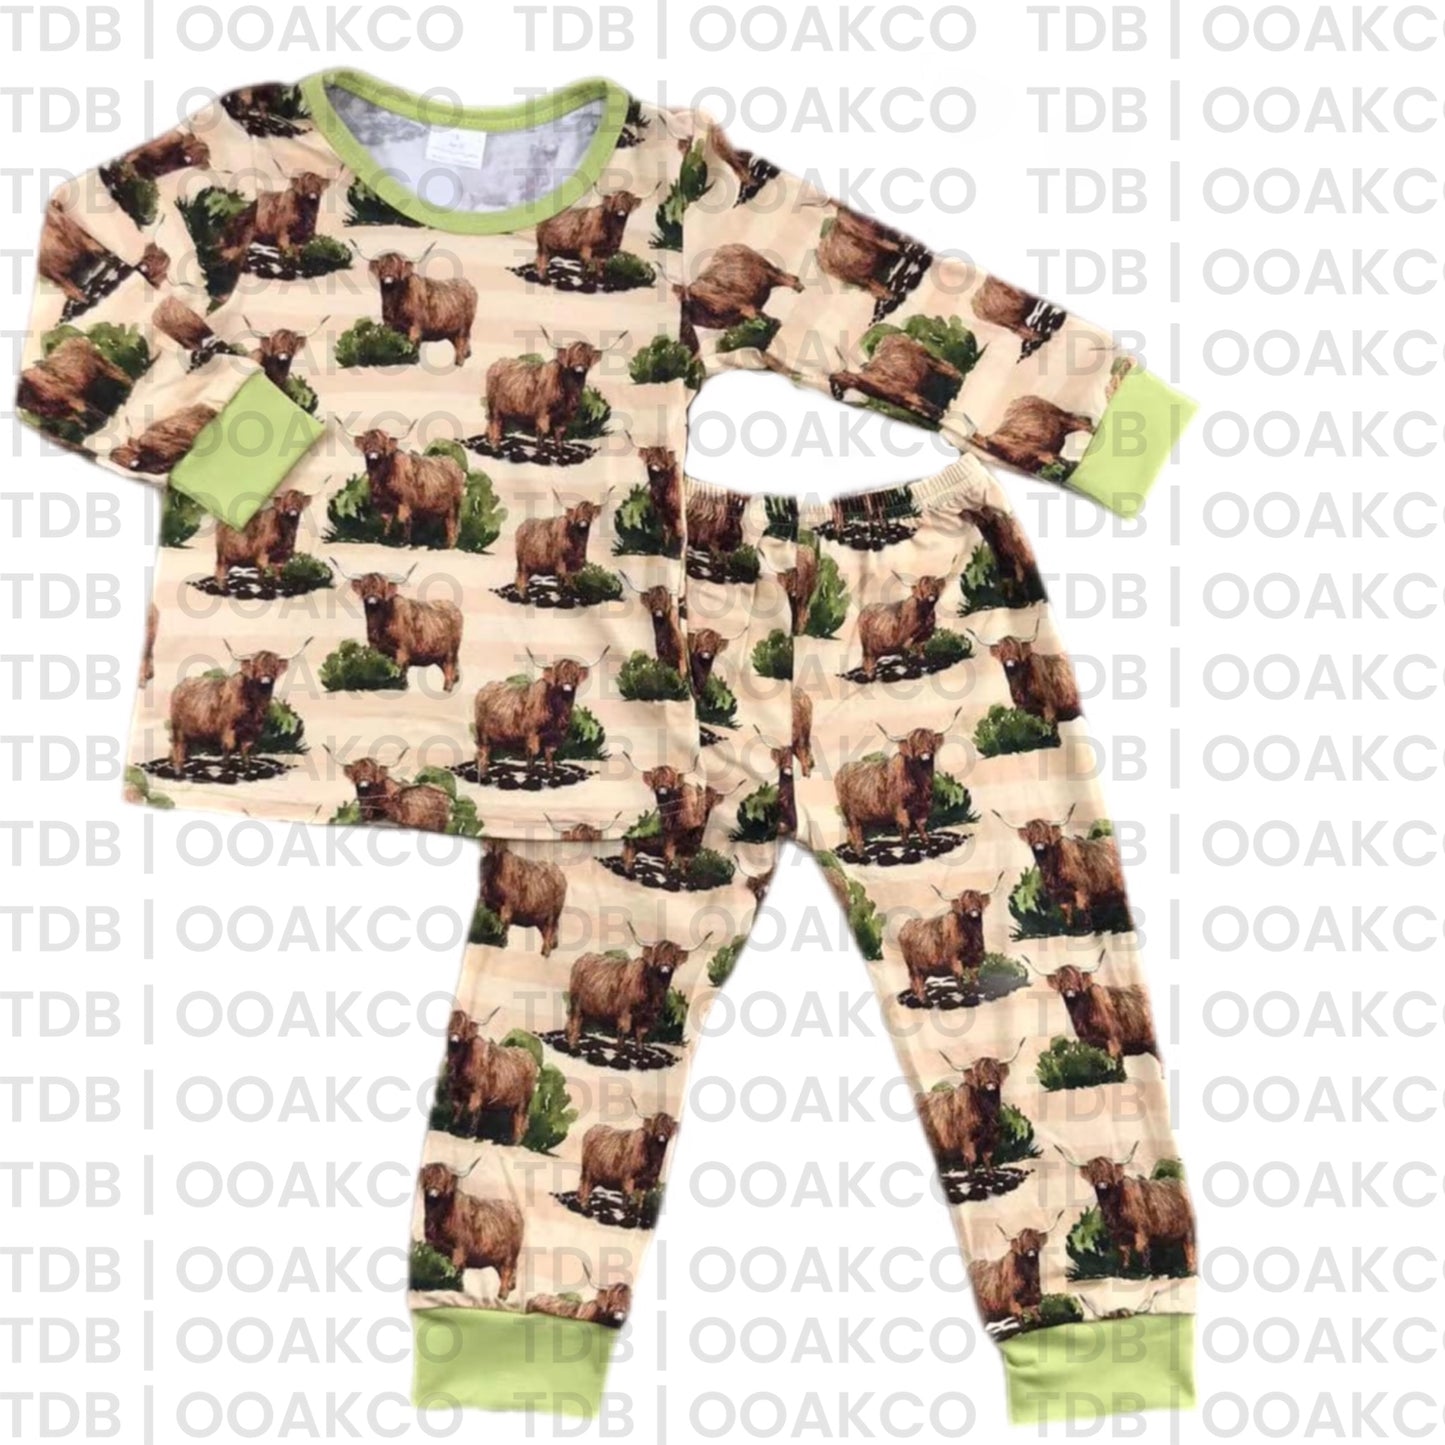 ᴡᴇᴇᴋʟʏ ᴘʀᴇ ᴏʀᴅᴇʀ Bamboo Cow Pajamas